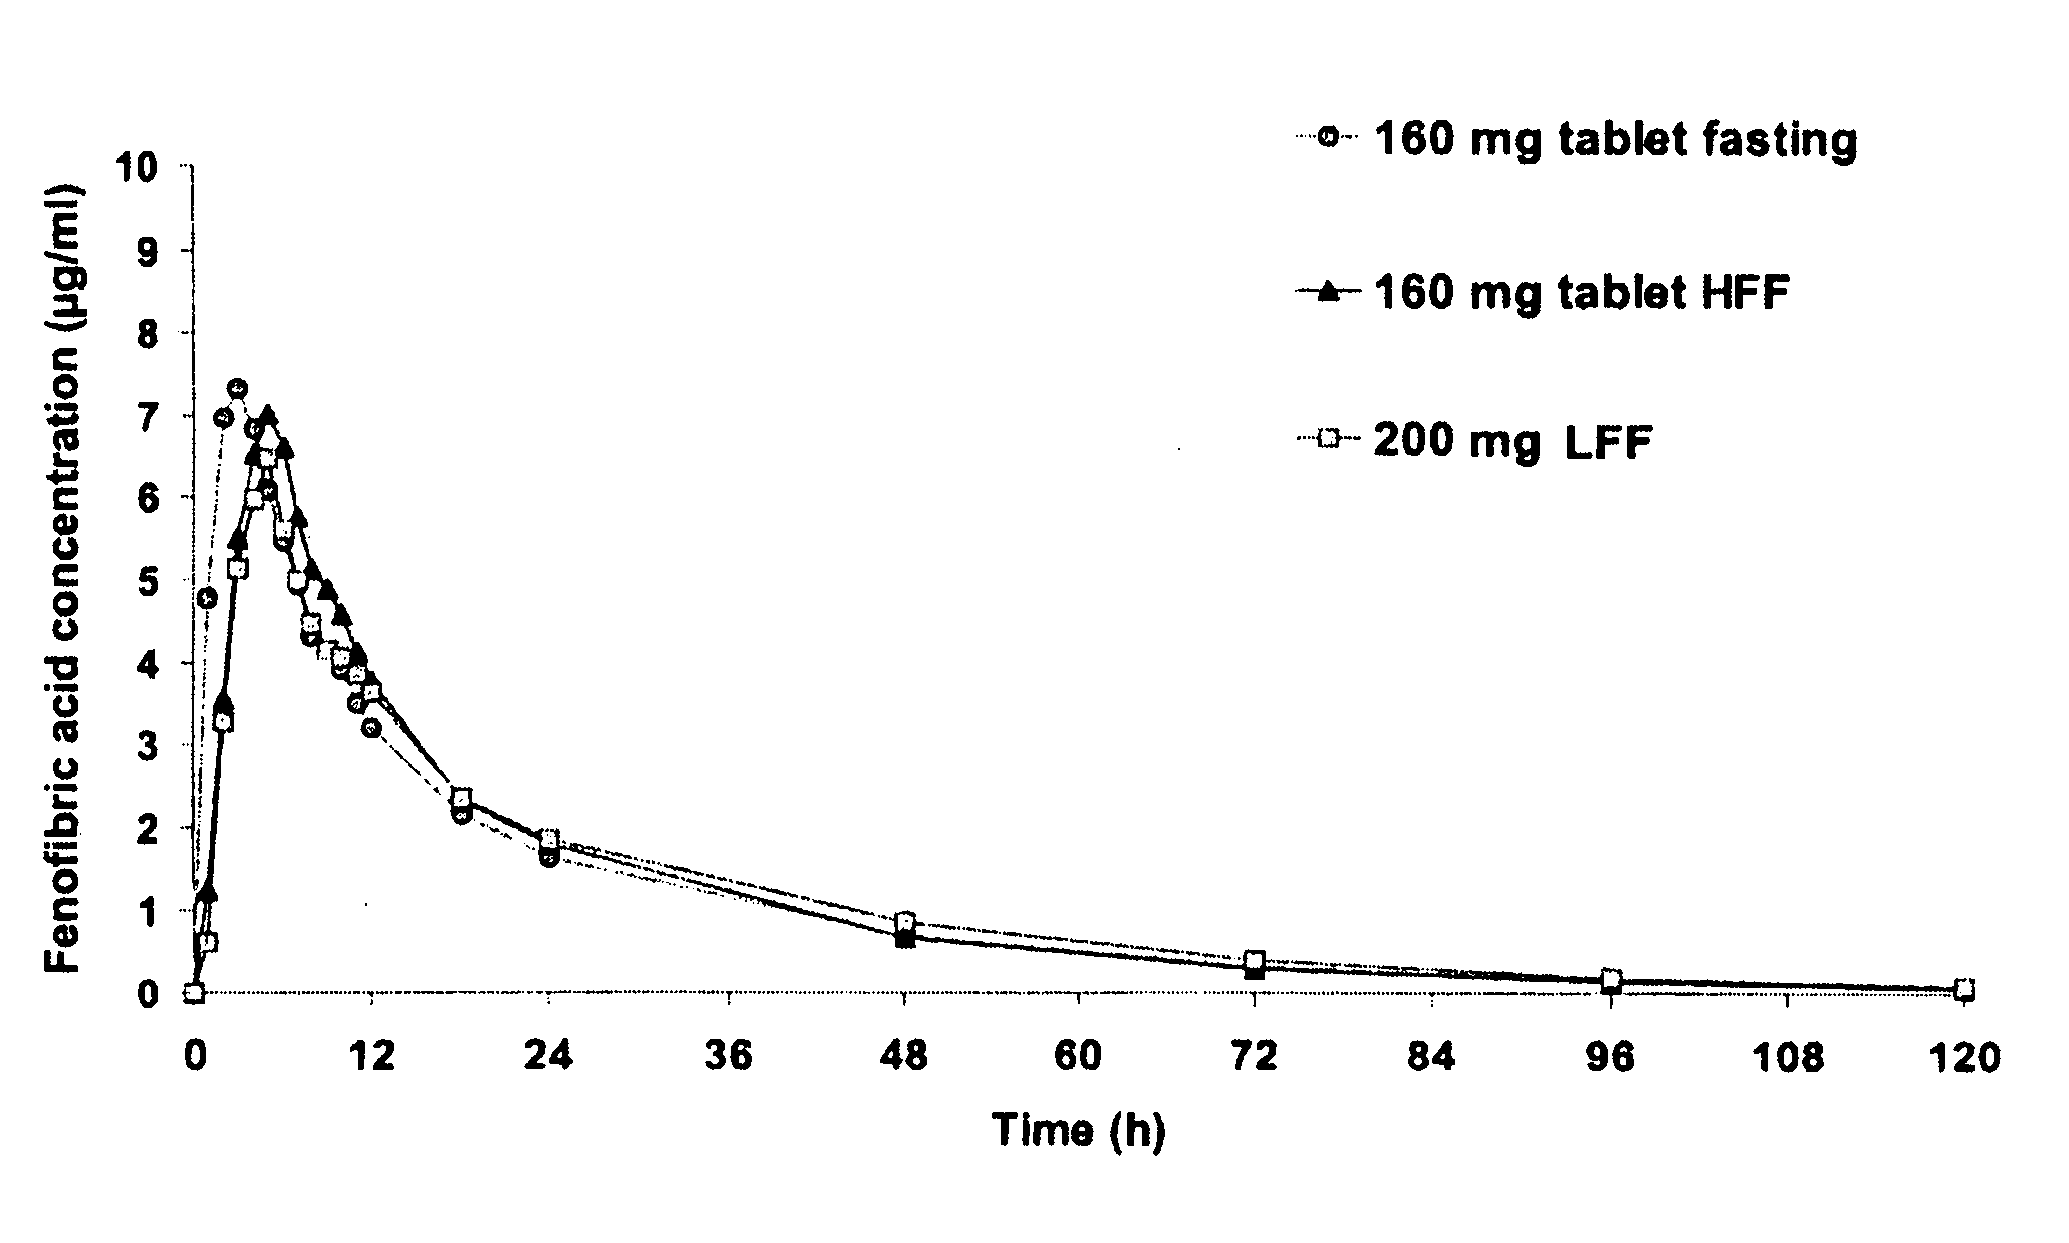 Nanoparticulate fibrate formulations